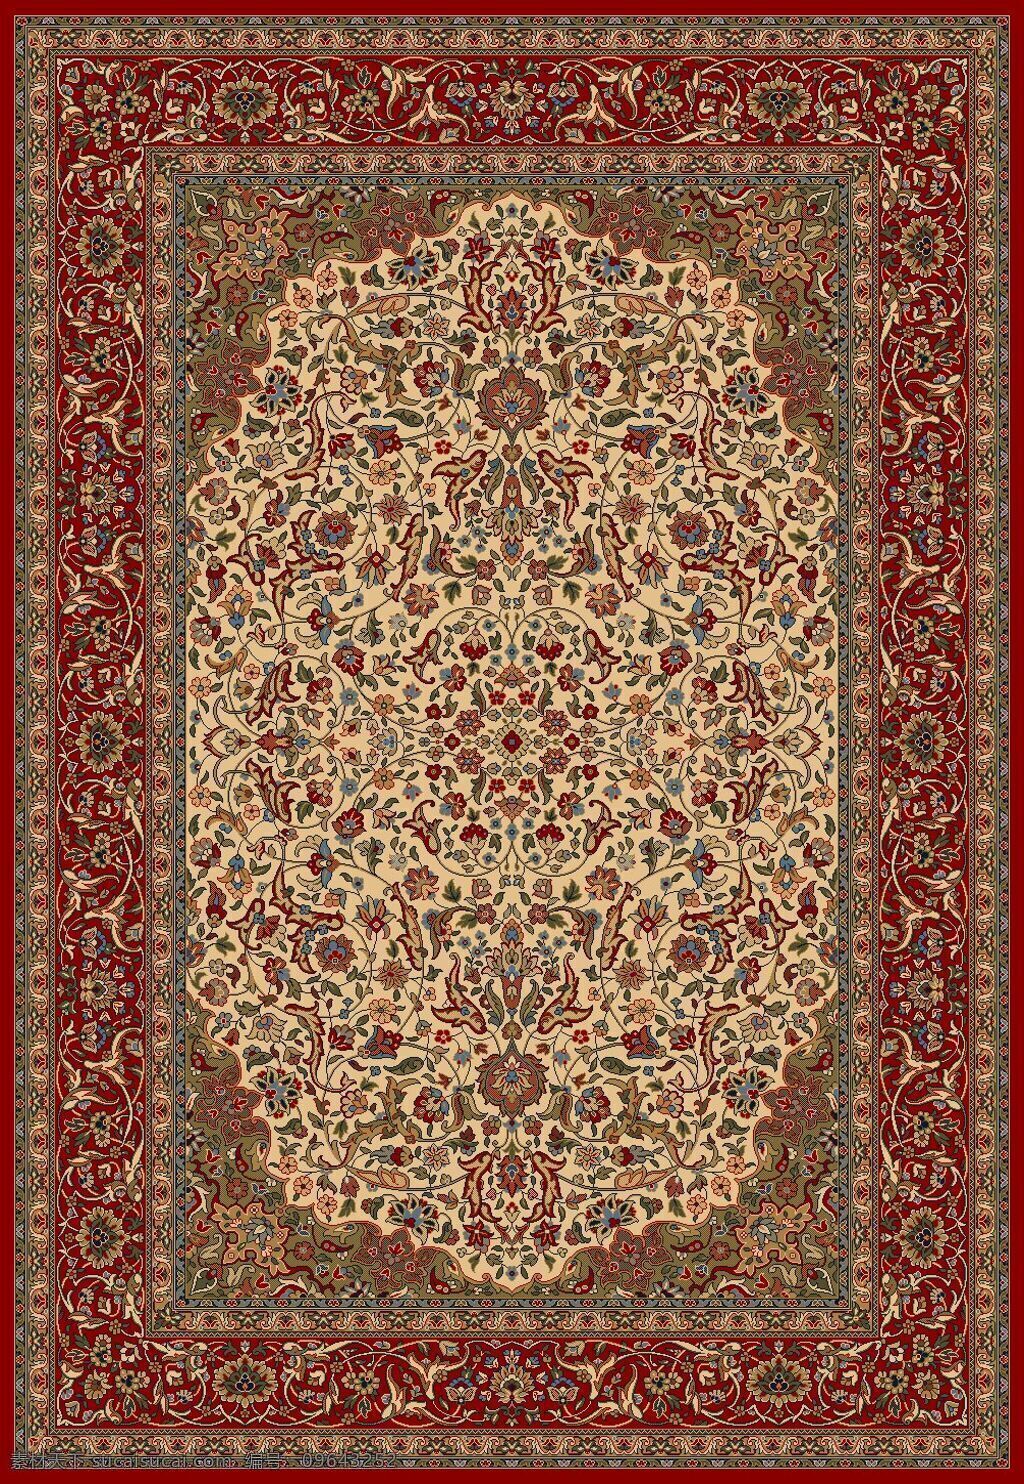 中式 地毯 材质 贴图 3d材质贴图 地毯材质贴图 3d贴图素材 3d贴图 图案